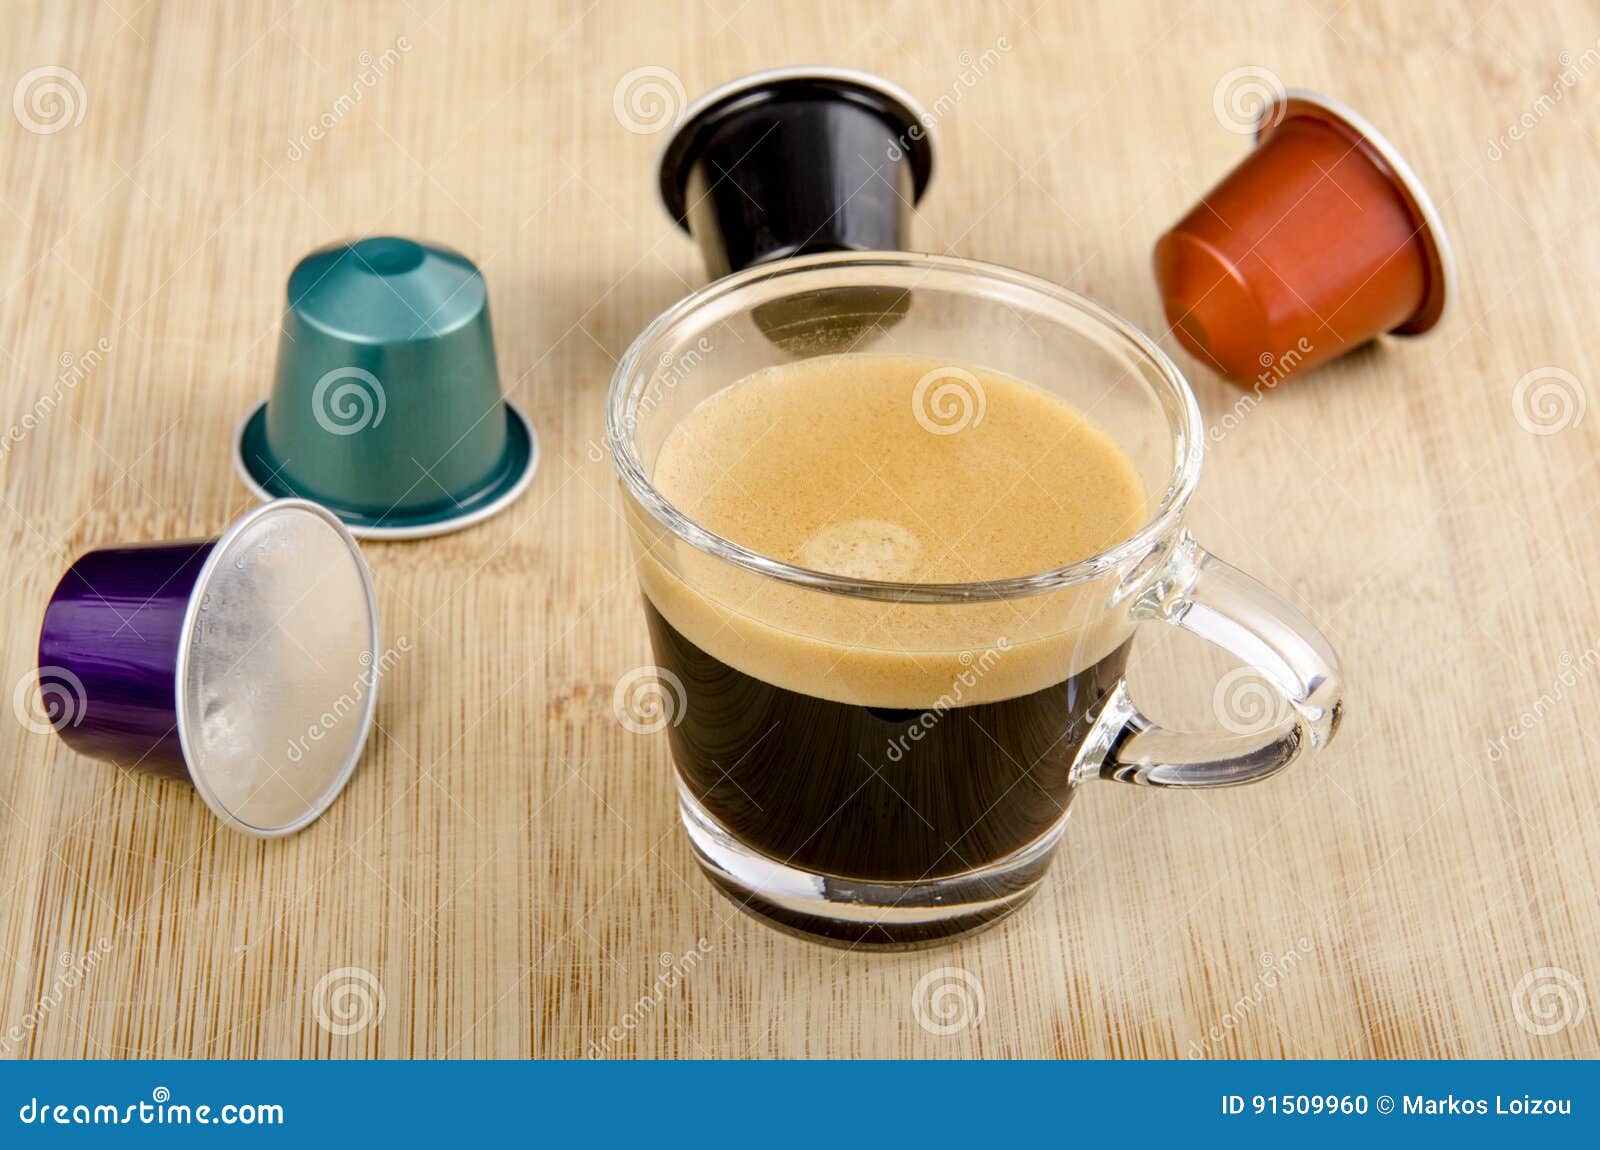 https://thumbs.dreamstime.com/z/glass-espresso-nespresso-capsules-around-91509960.jpg